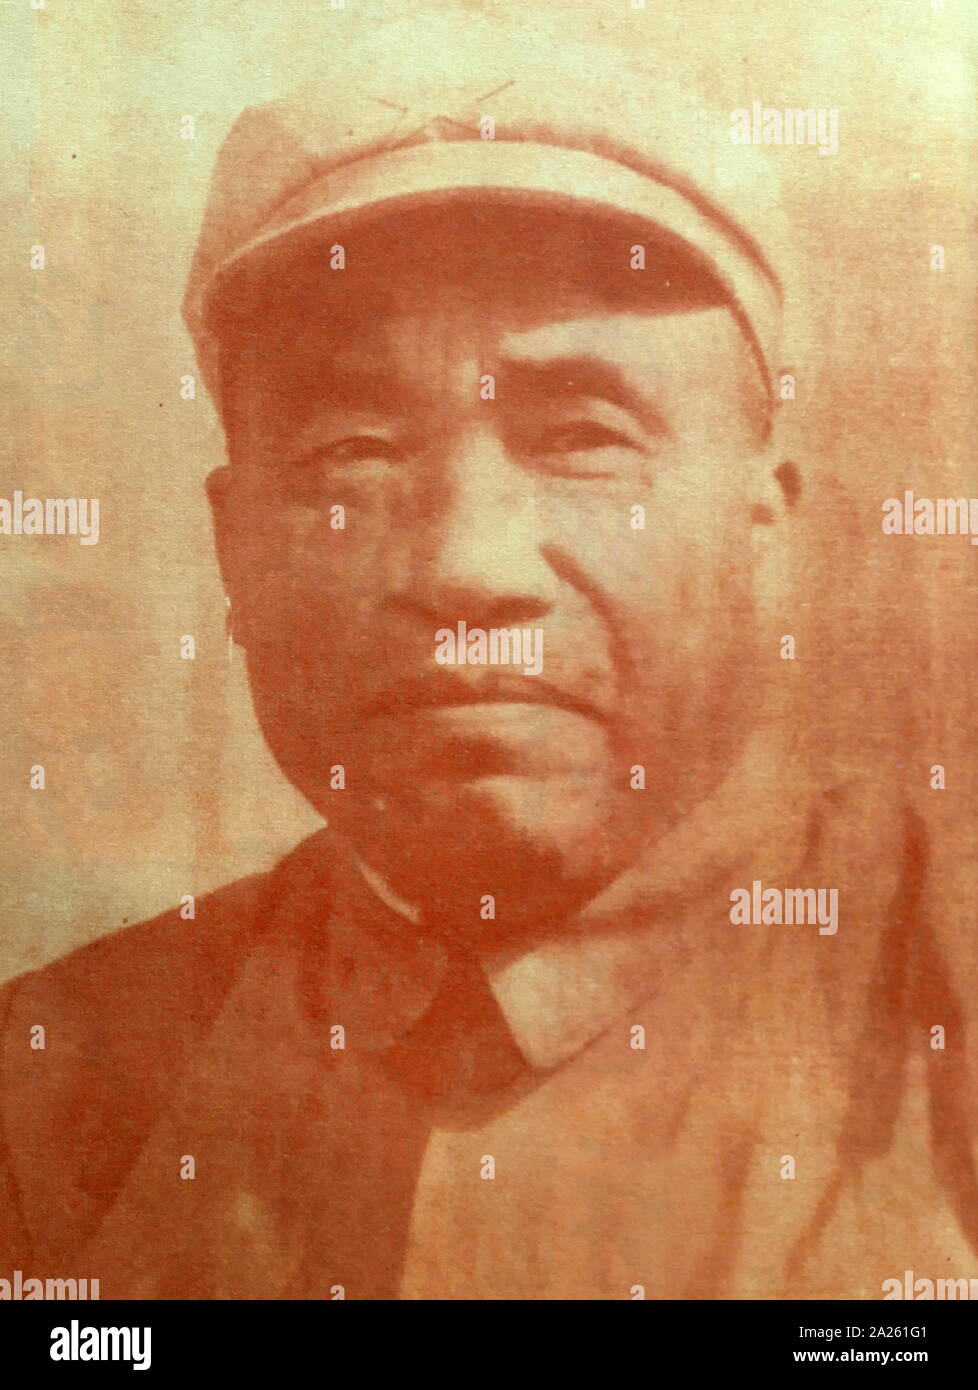 Zhu De (1886-1976), chinesischer General, Politiker und Revolutionär der Kommunistischen Partei Chinas Stockfoto